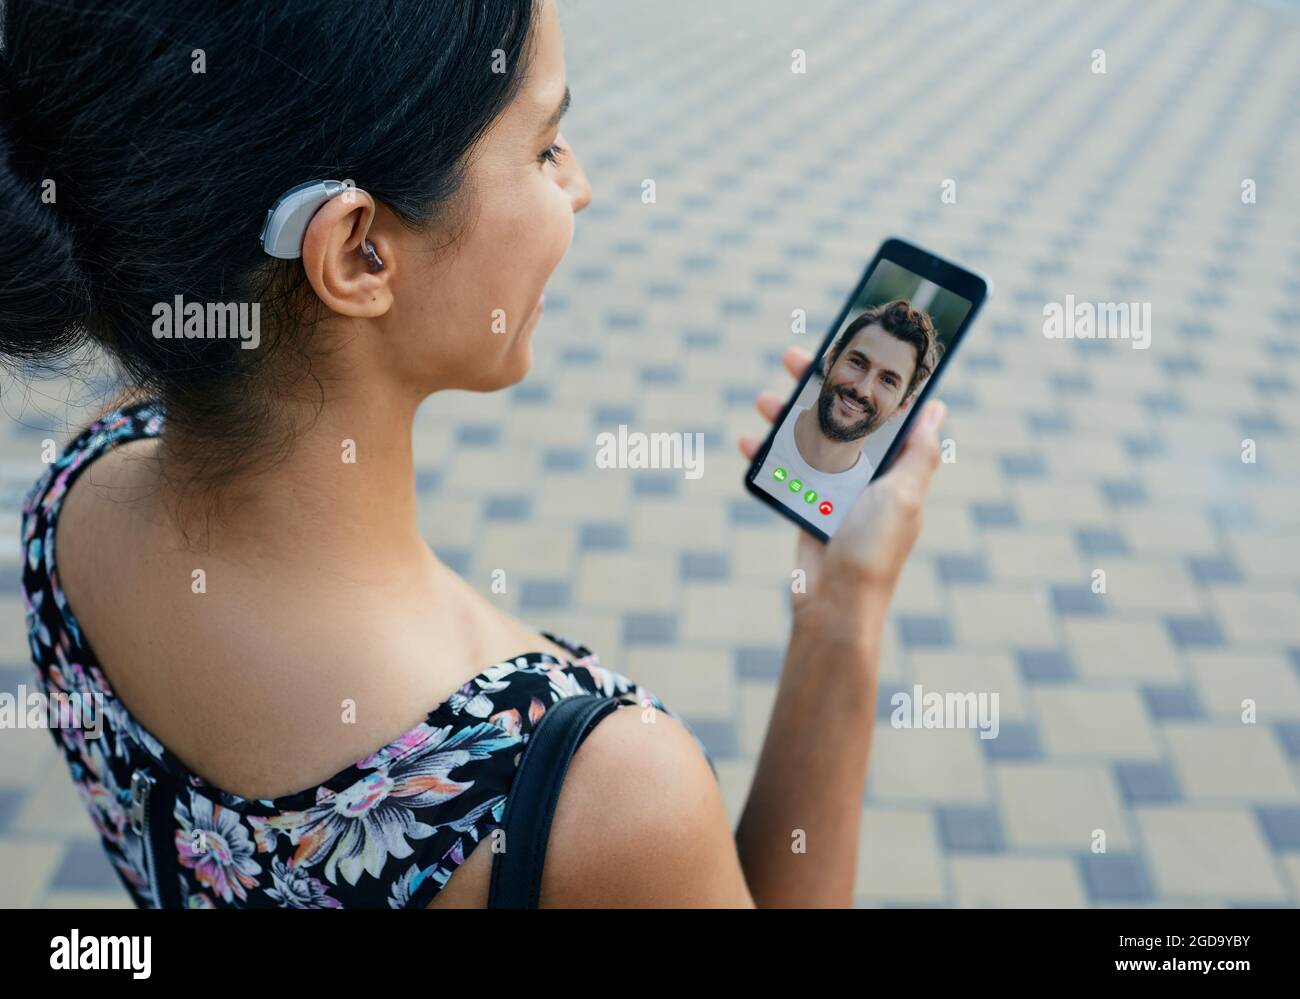 La femme Brunette, avec une prothèse auditive derrière l'oreille, communique avec son petit ami par communication vidéo via un smartphone Banque D'Images